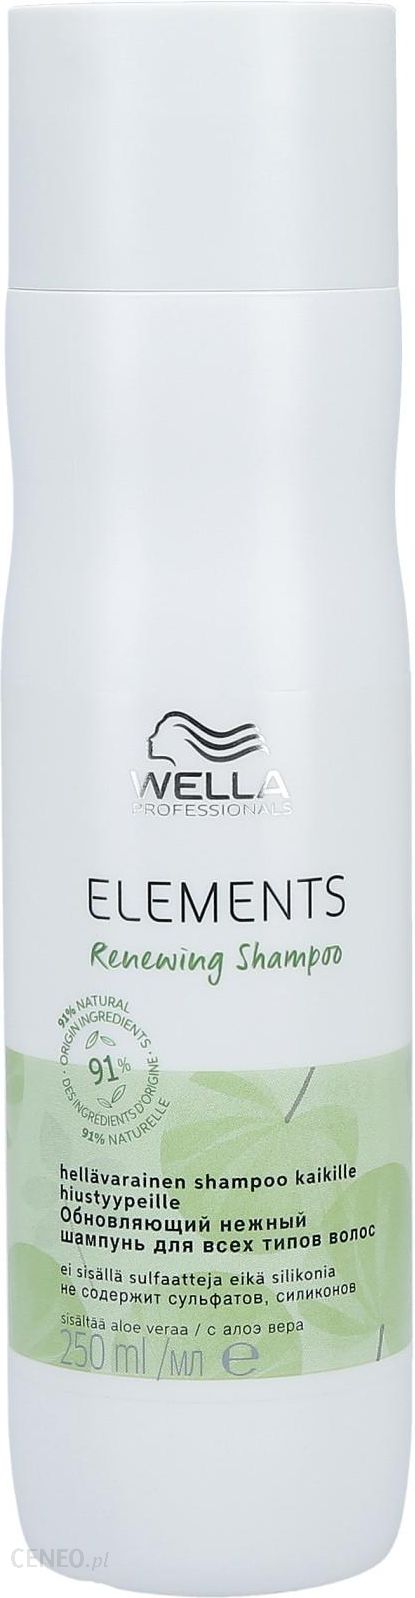 wella elements szampon wizaz